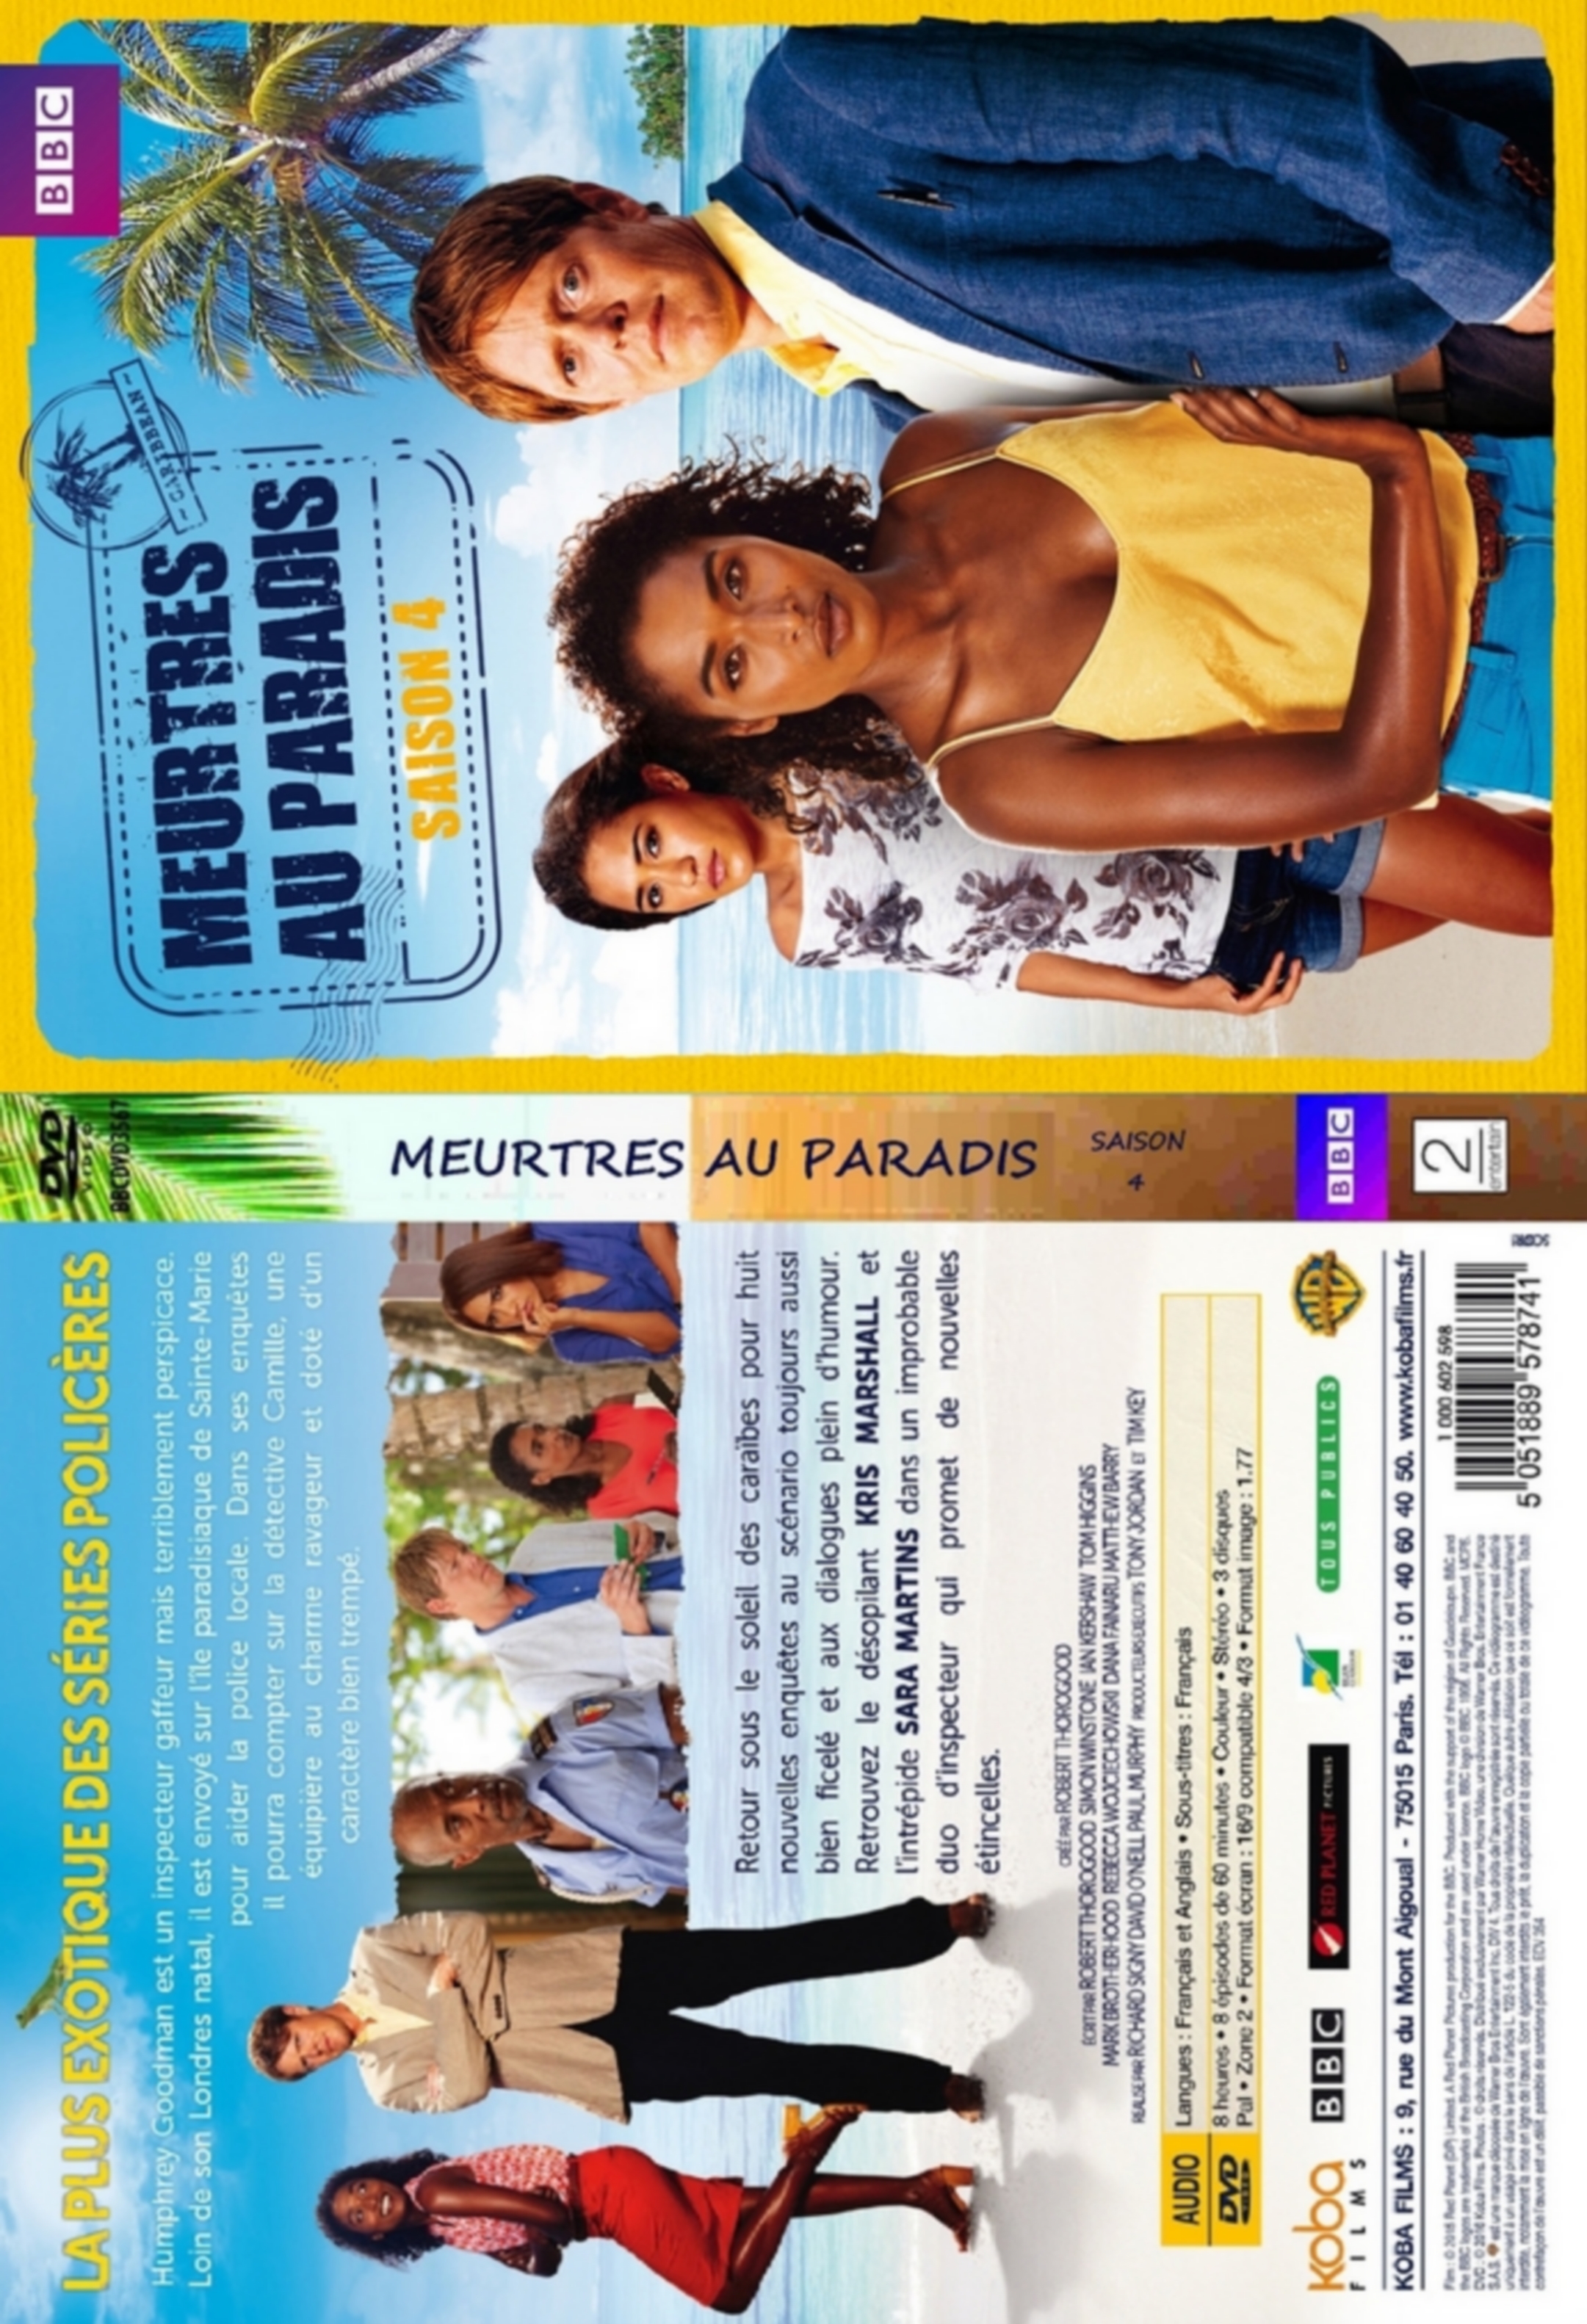 Jaquette DVD Meurtres au Paradis 4 - SLIM